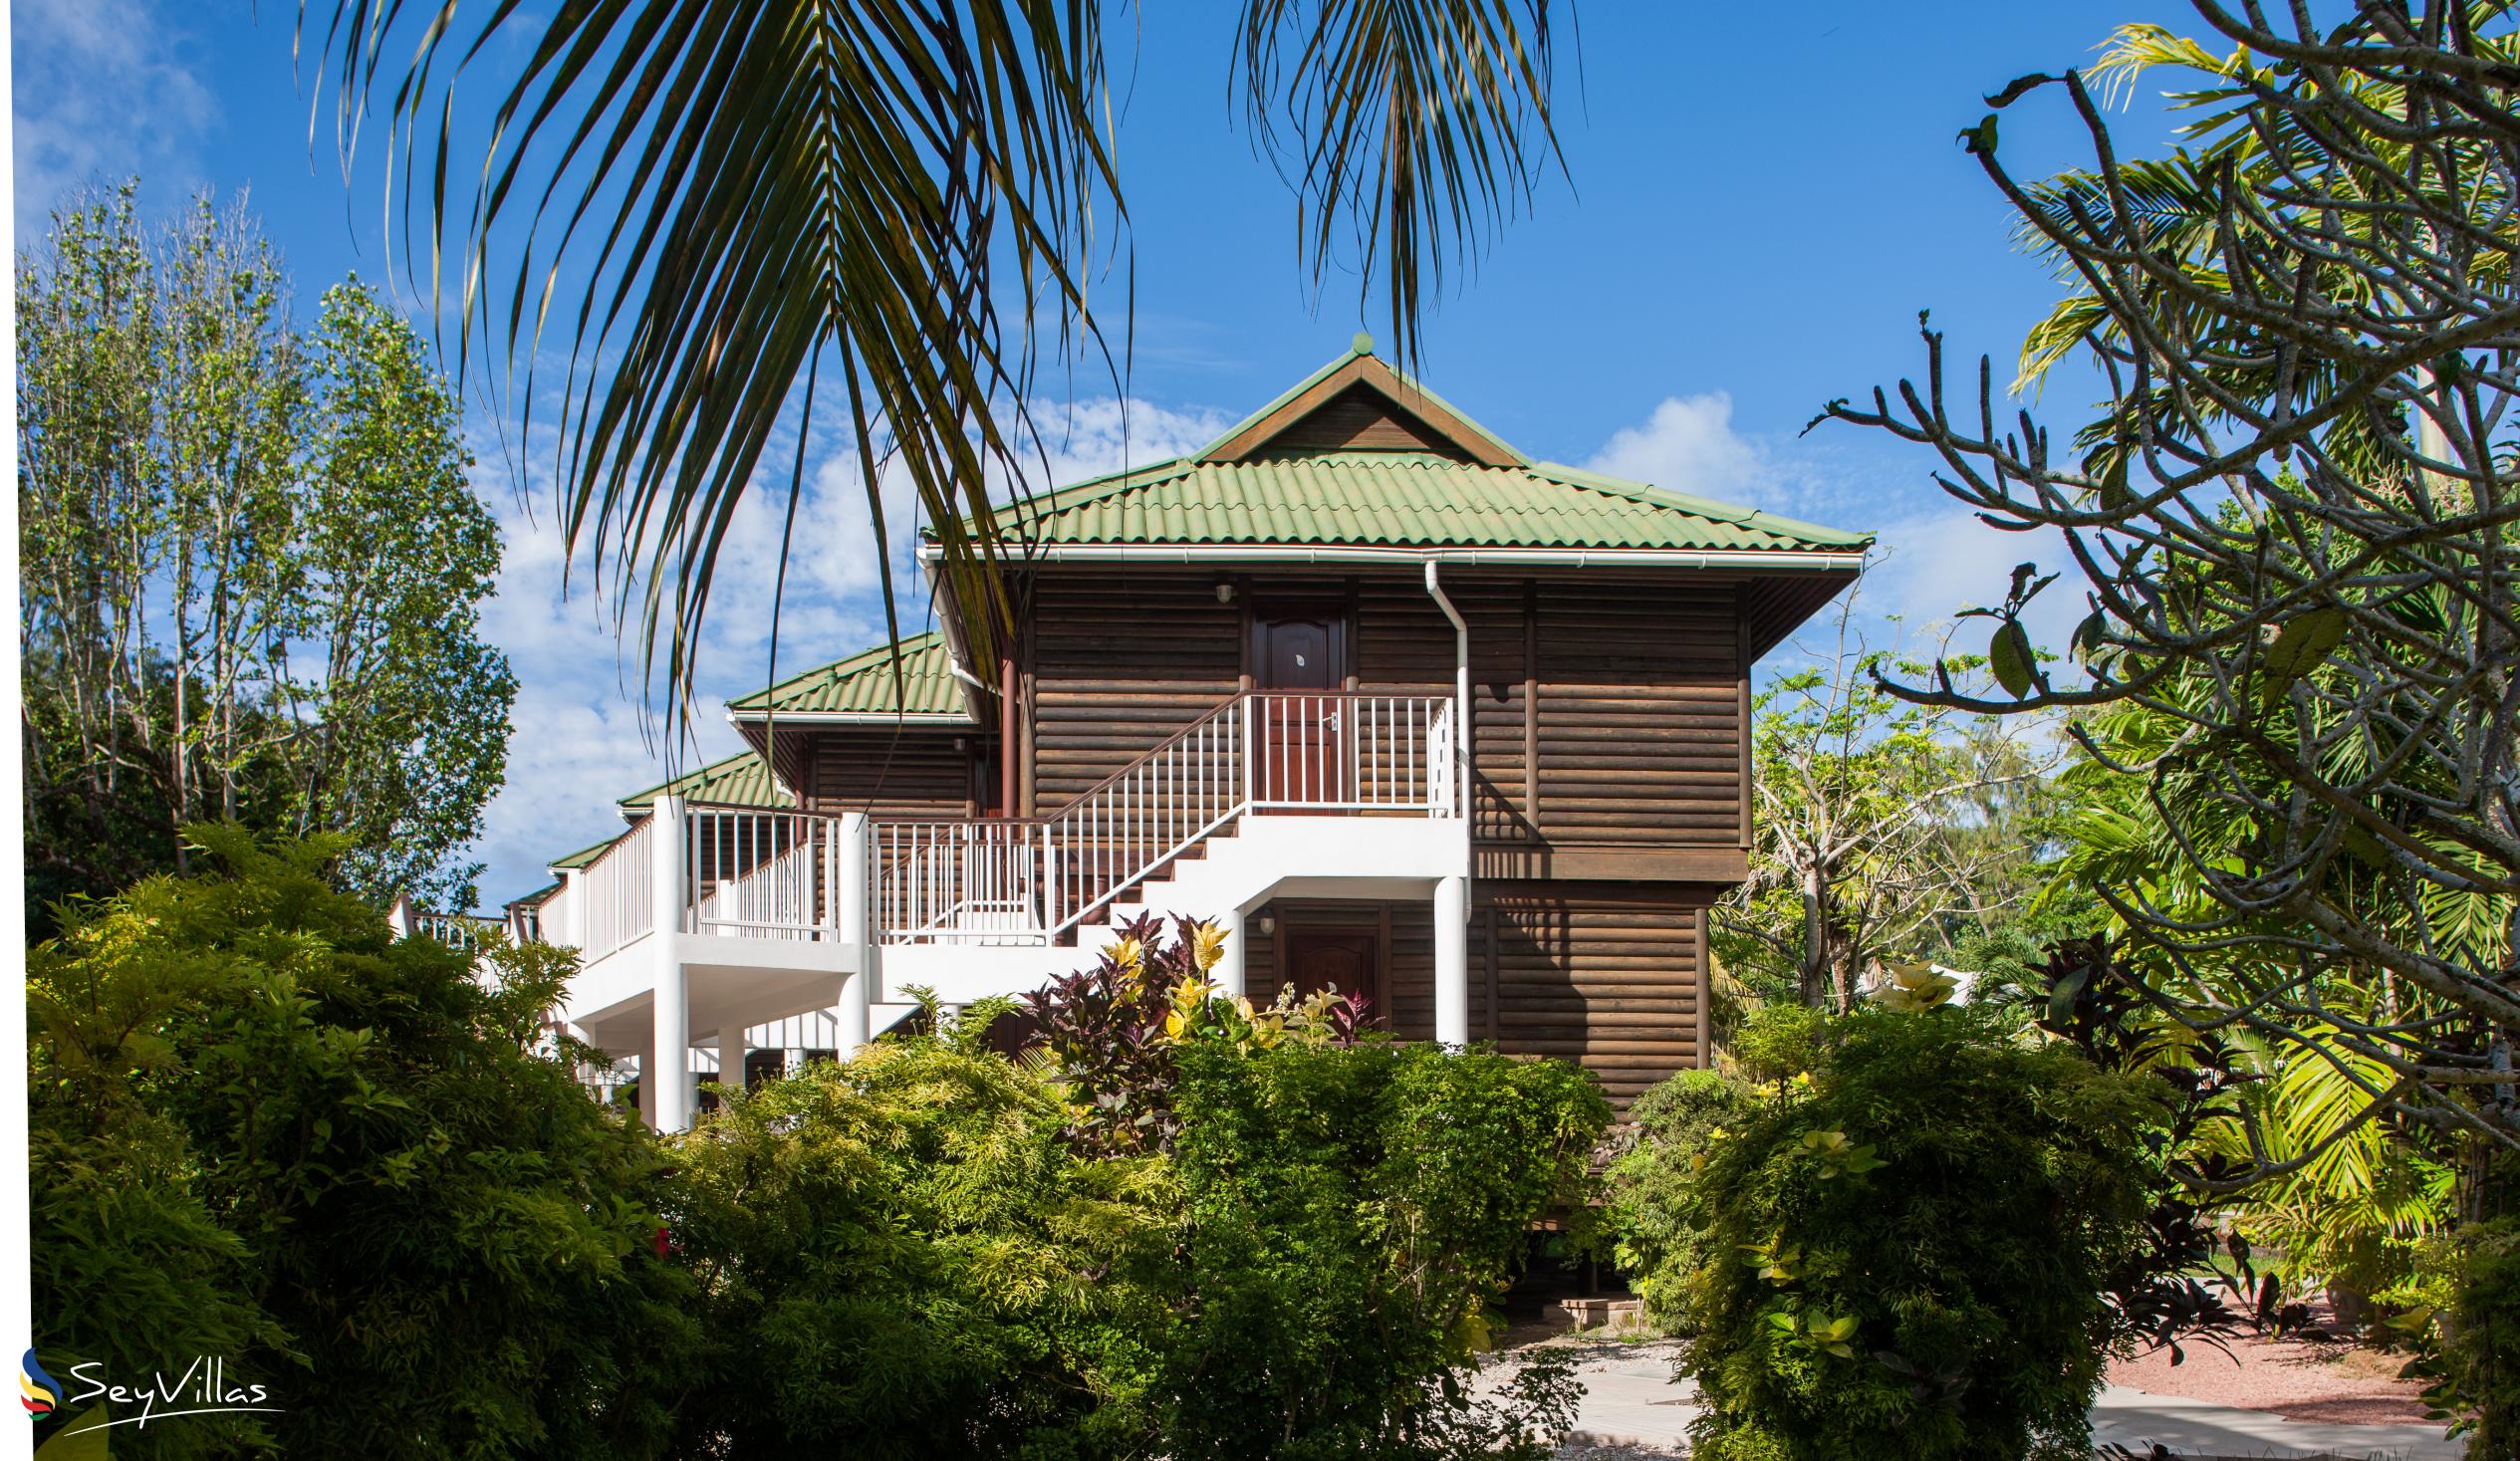 Foto 51: Acajou Beach Resort - Aussenbereich - Praslin (Seychellen)